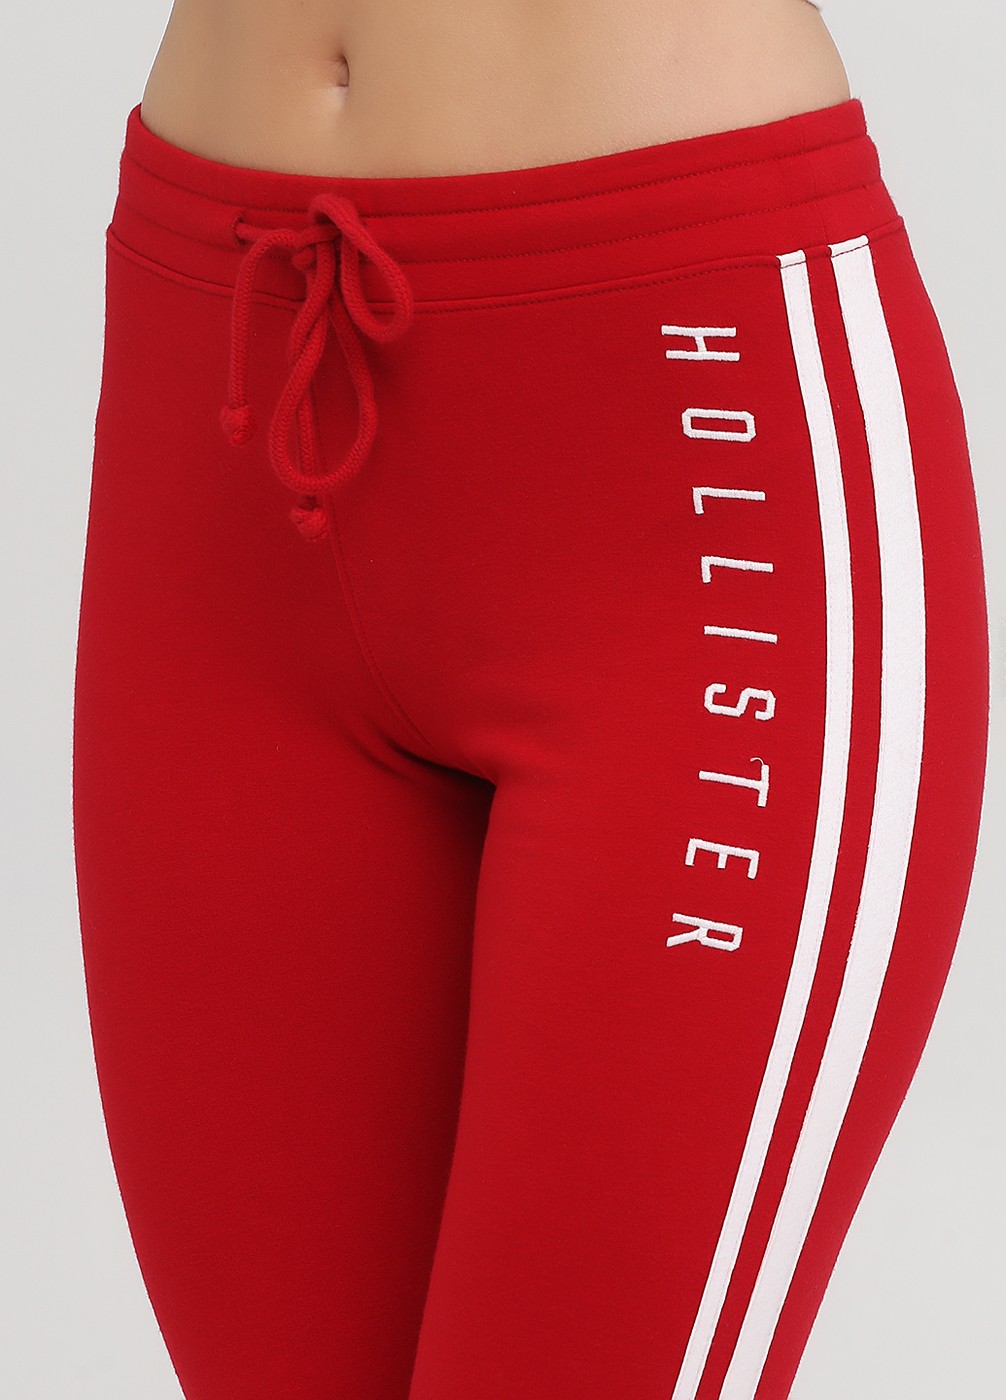 Спортивные штаны - женские спортивные штаны Hollister, S, S